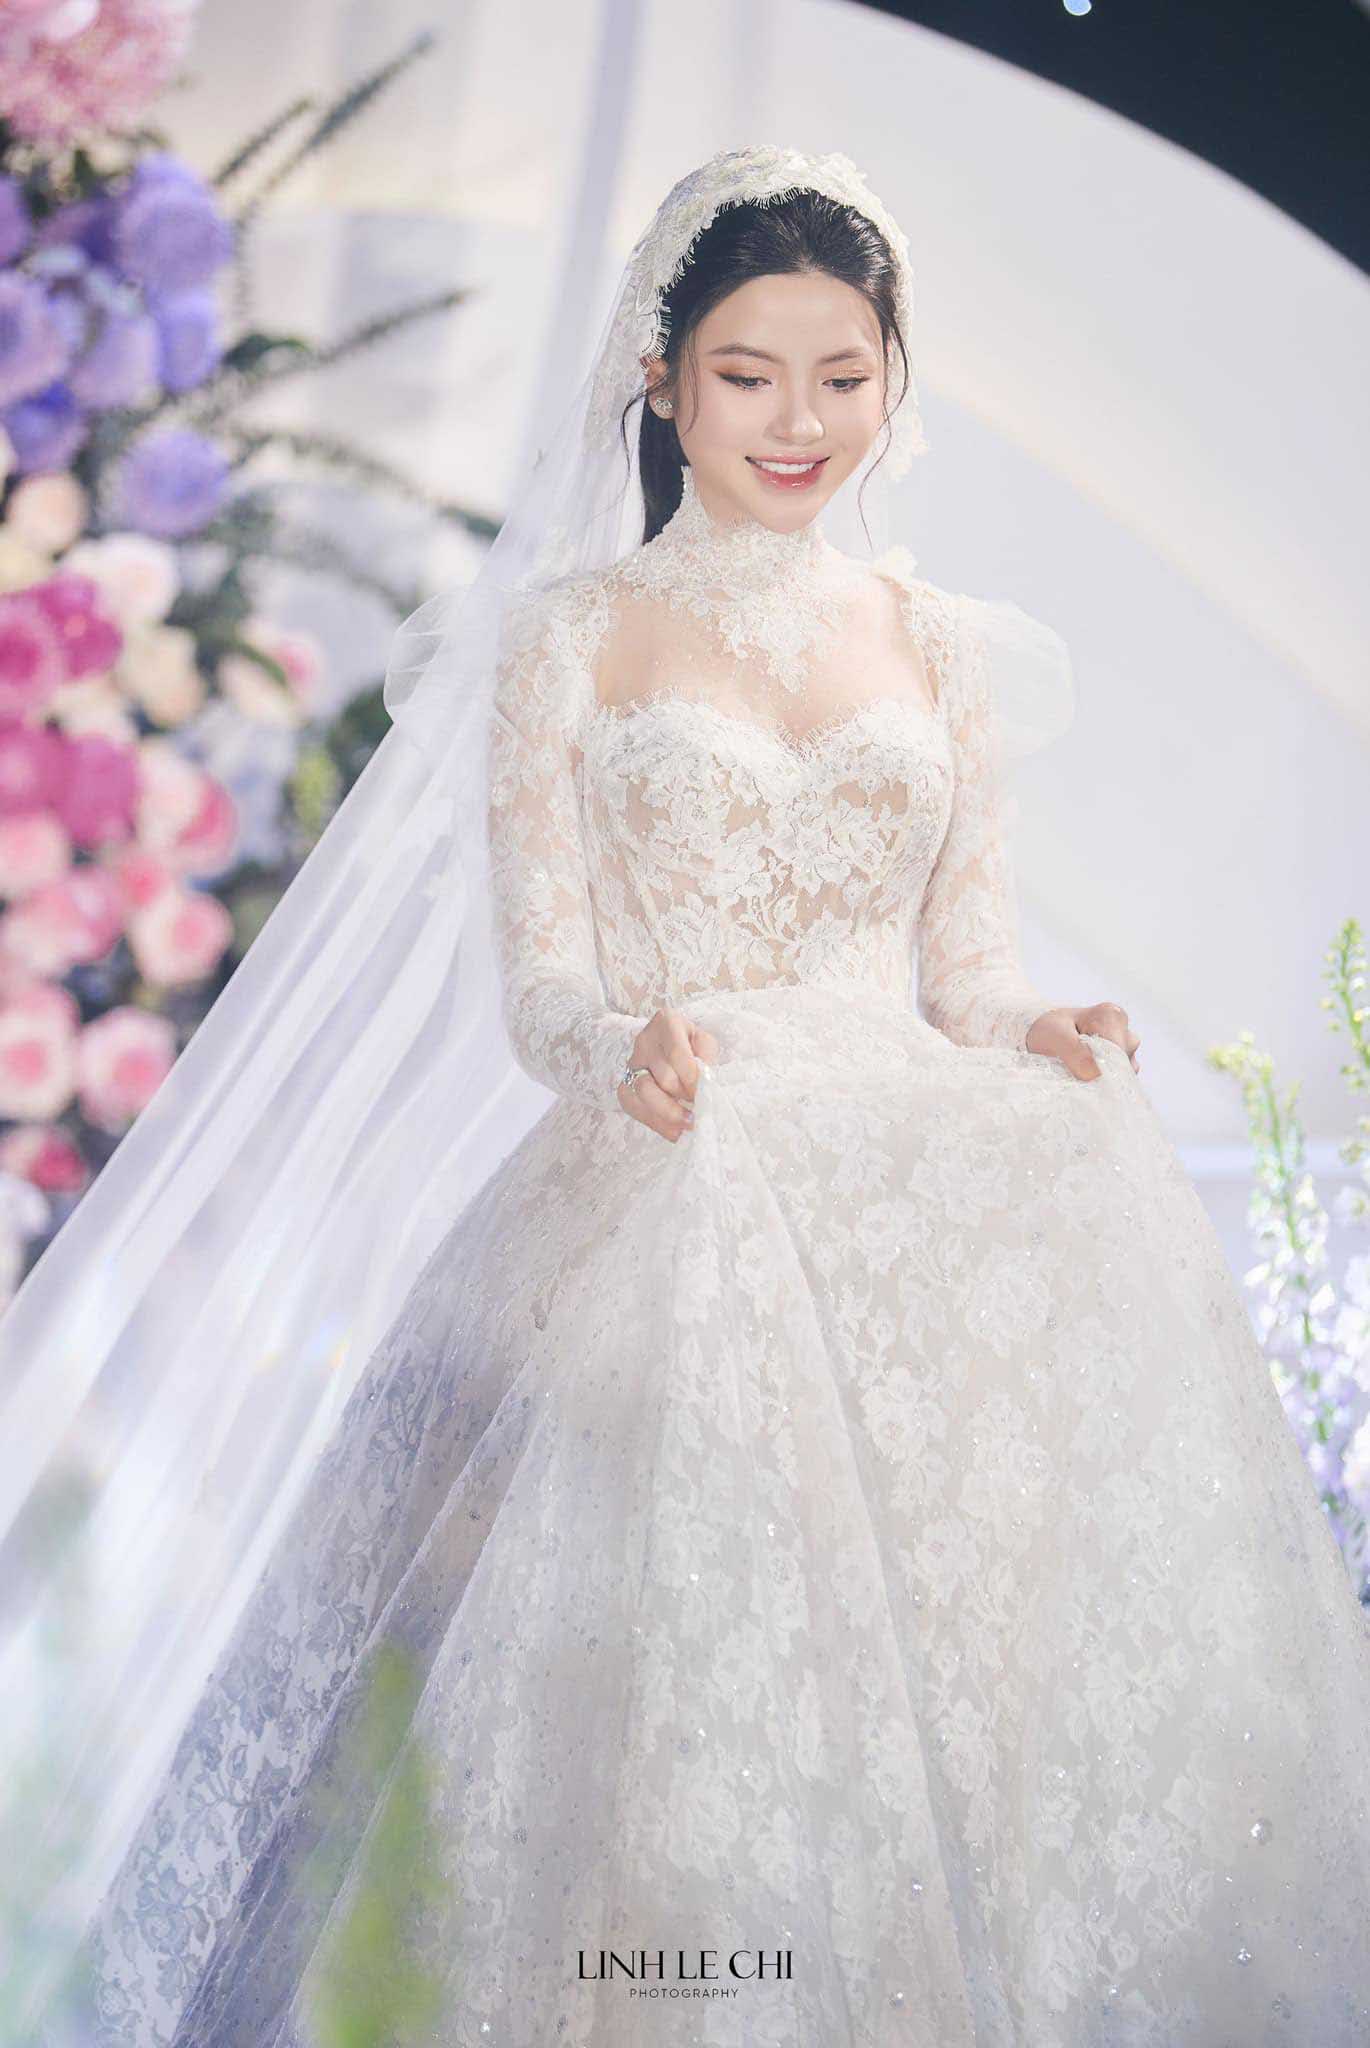 Ngày 28.3, đám cưới của Quang Hải và Chu Thanh Huyền đã diễn ra với sự quan tâm lớn từ người hâm mộ. Nhan sắc của Chu Thanh Huyền cũng trở thành chủ đề bàn tán trên mạng xã hội. Ảnh: Linh Lê Chí.